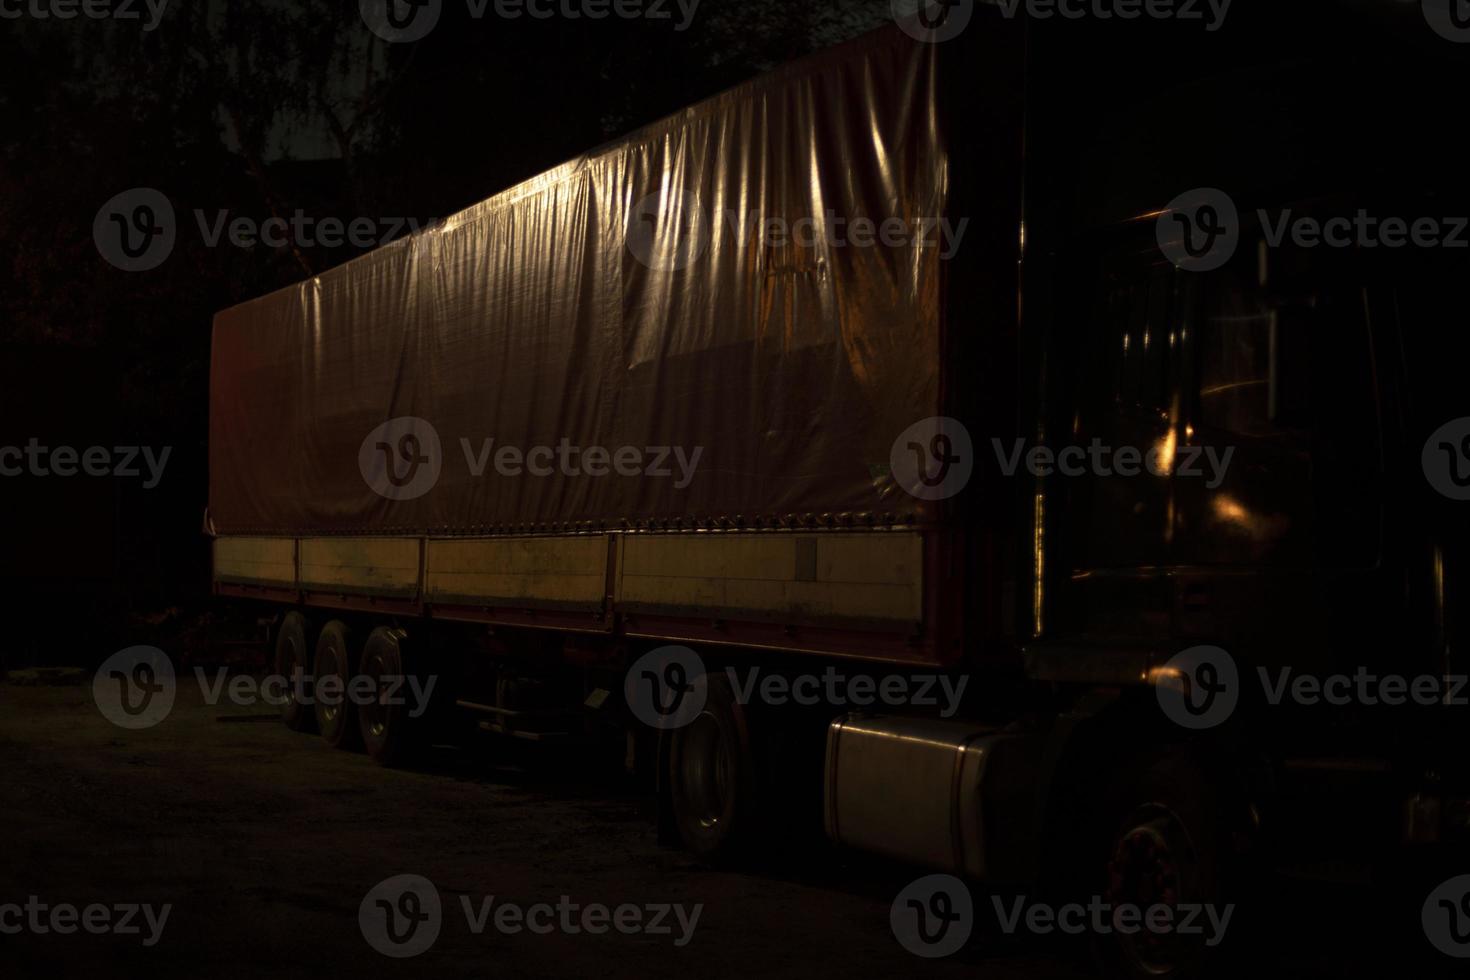 camion a notte. camion nel durante la notte parcheggio quantità. corpo di trasporto. foto